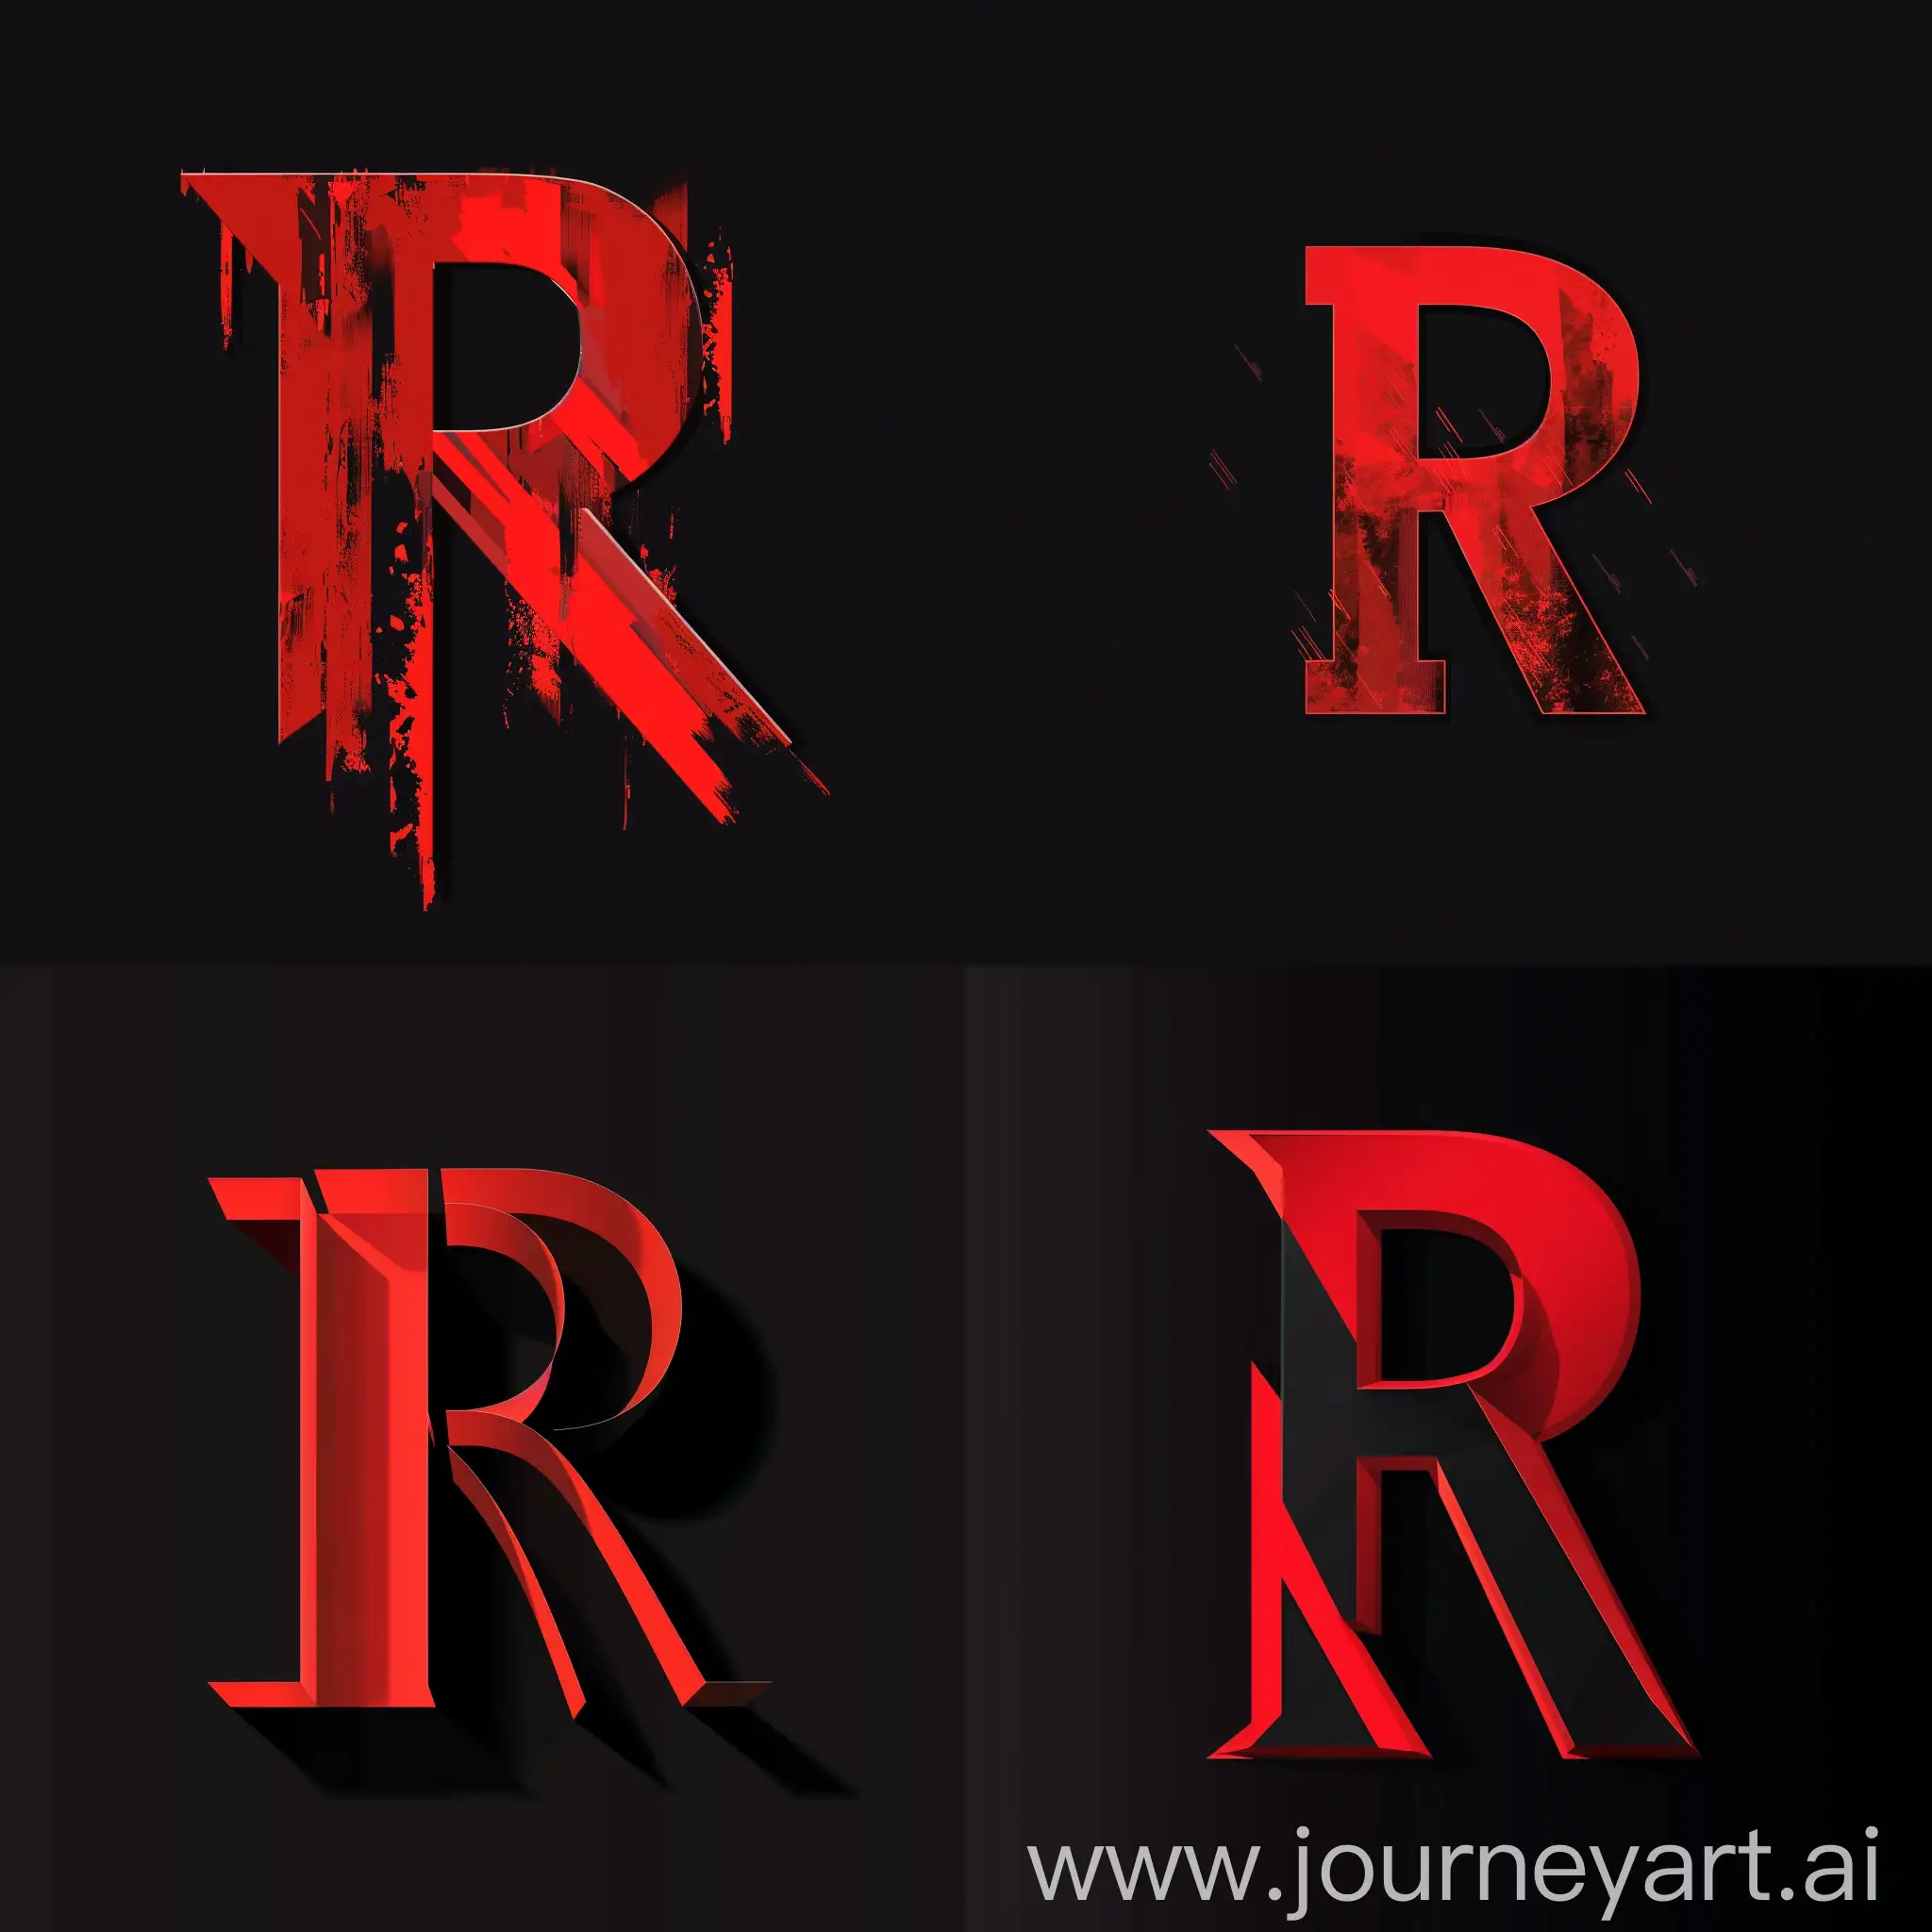 Минималестичная аватарка выполненная в деловом стиле с буквой R выполненная в красно черных тонах